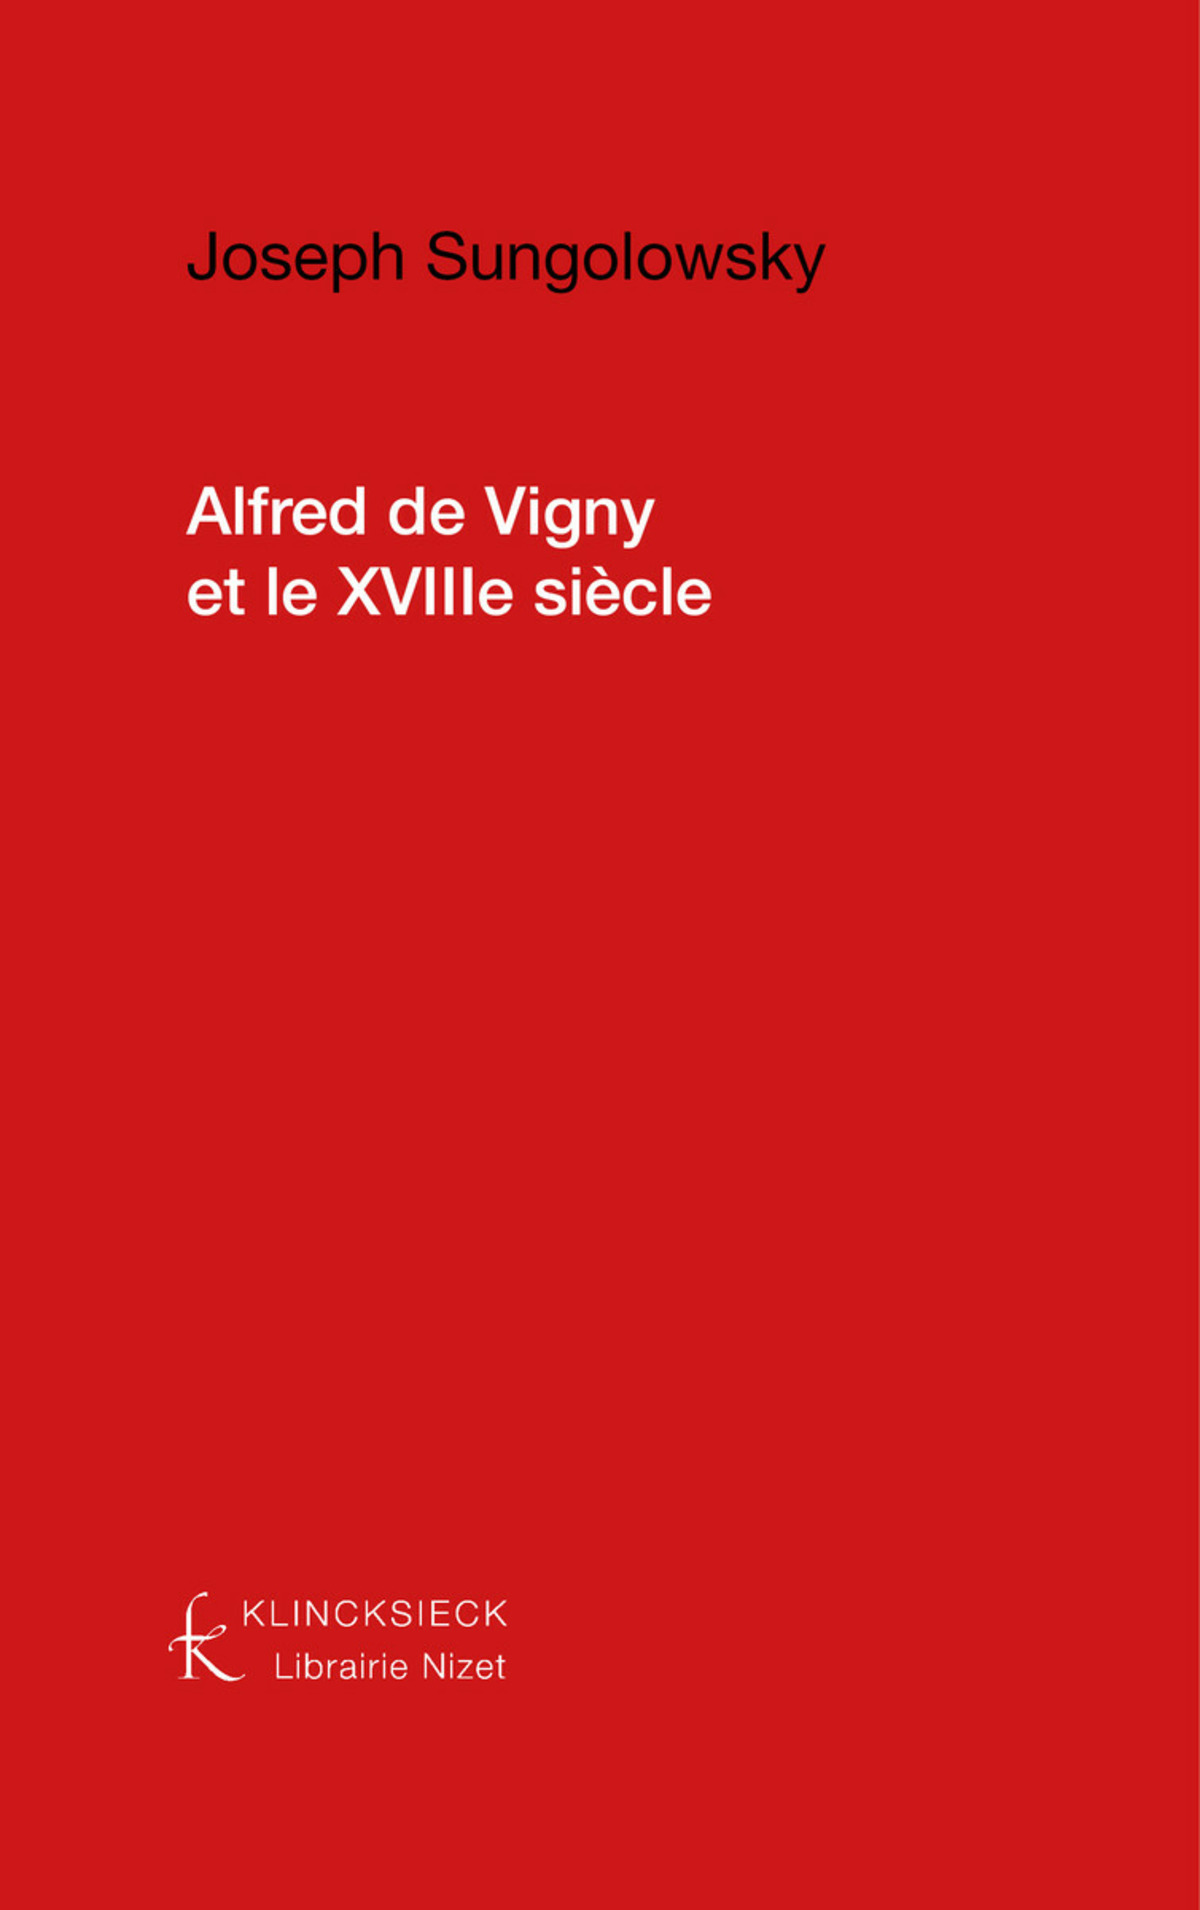 Alfred de Vigny et le dix-huitième siècle